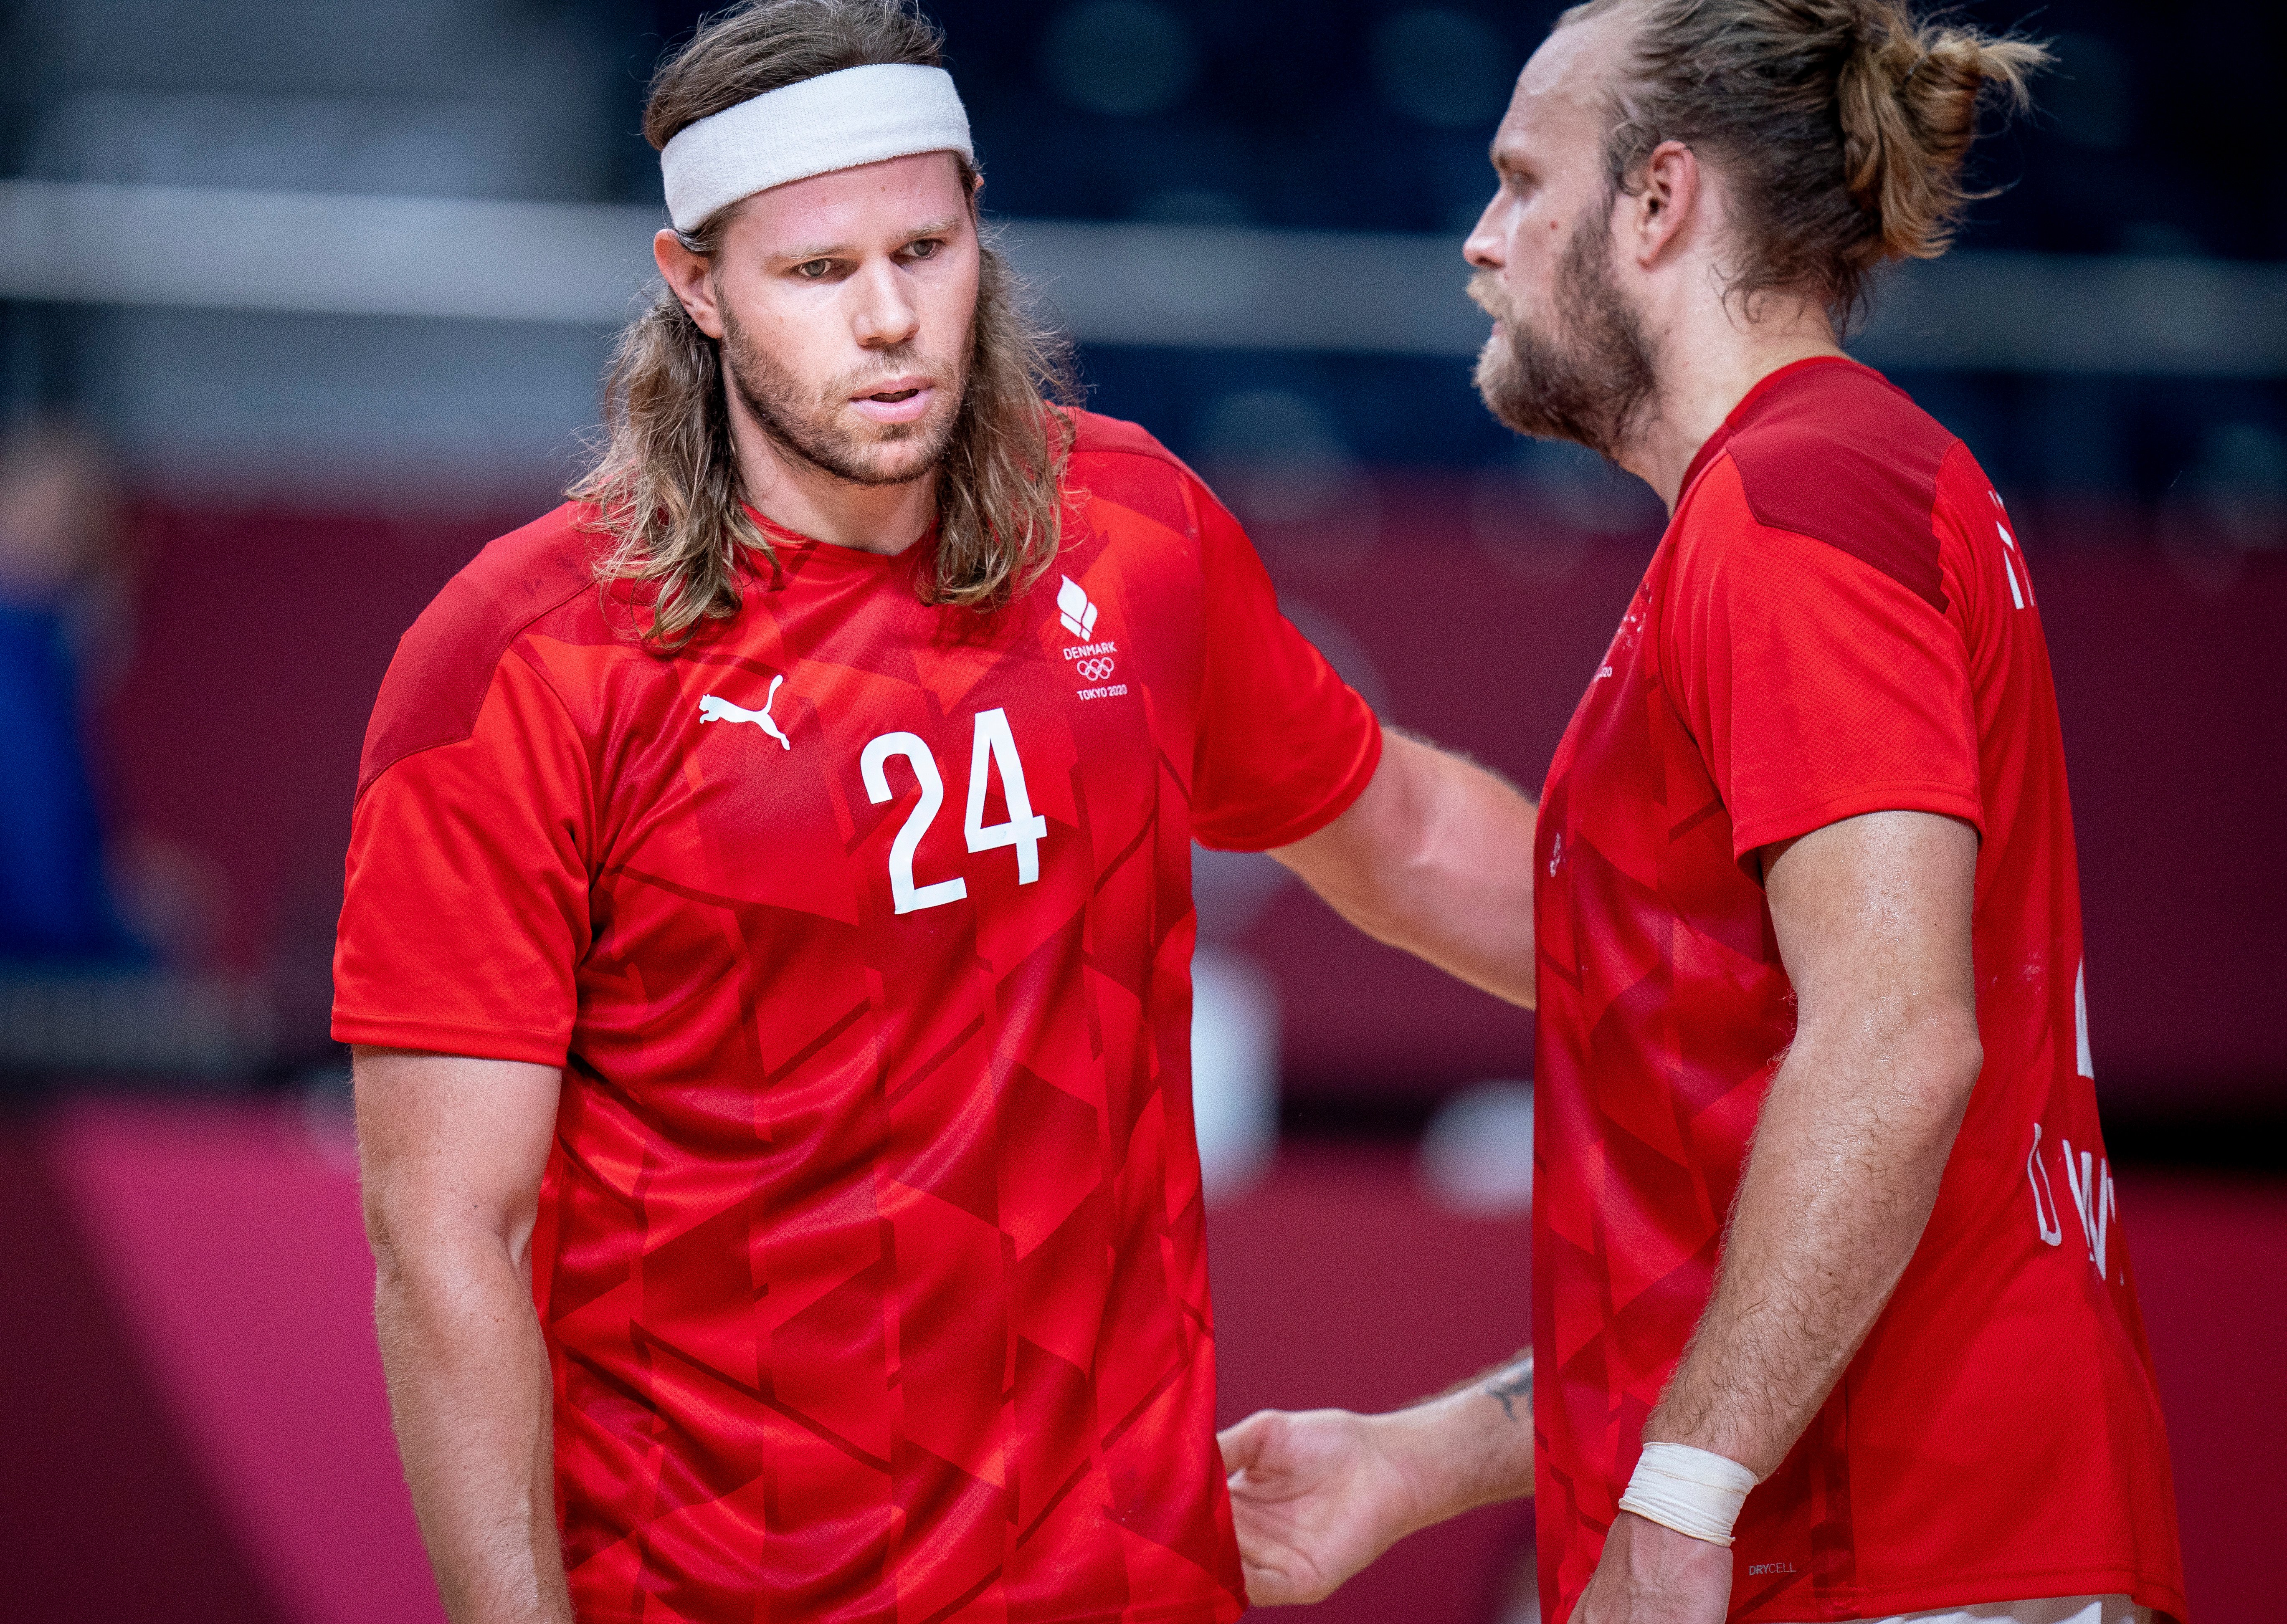 Nu starter VM: Sådan bliver Aalborg-spillernes roller